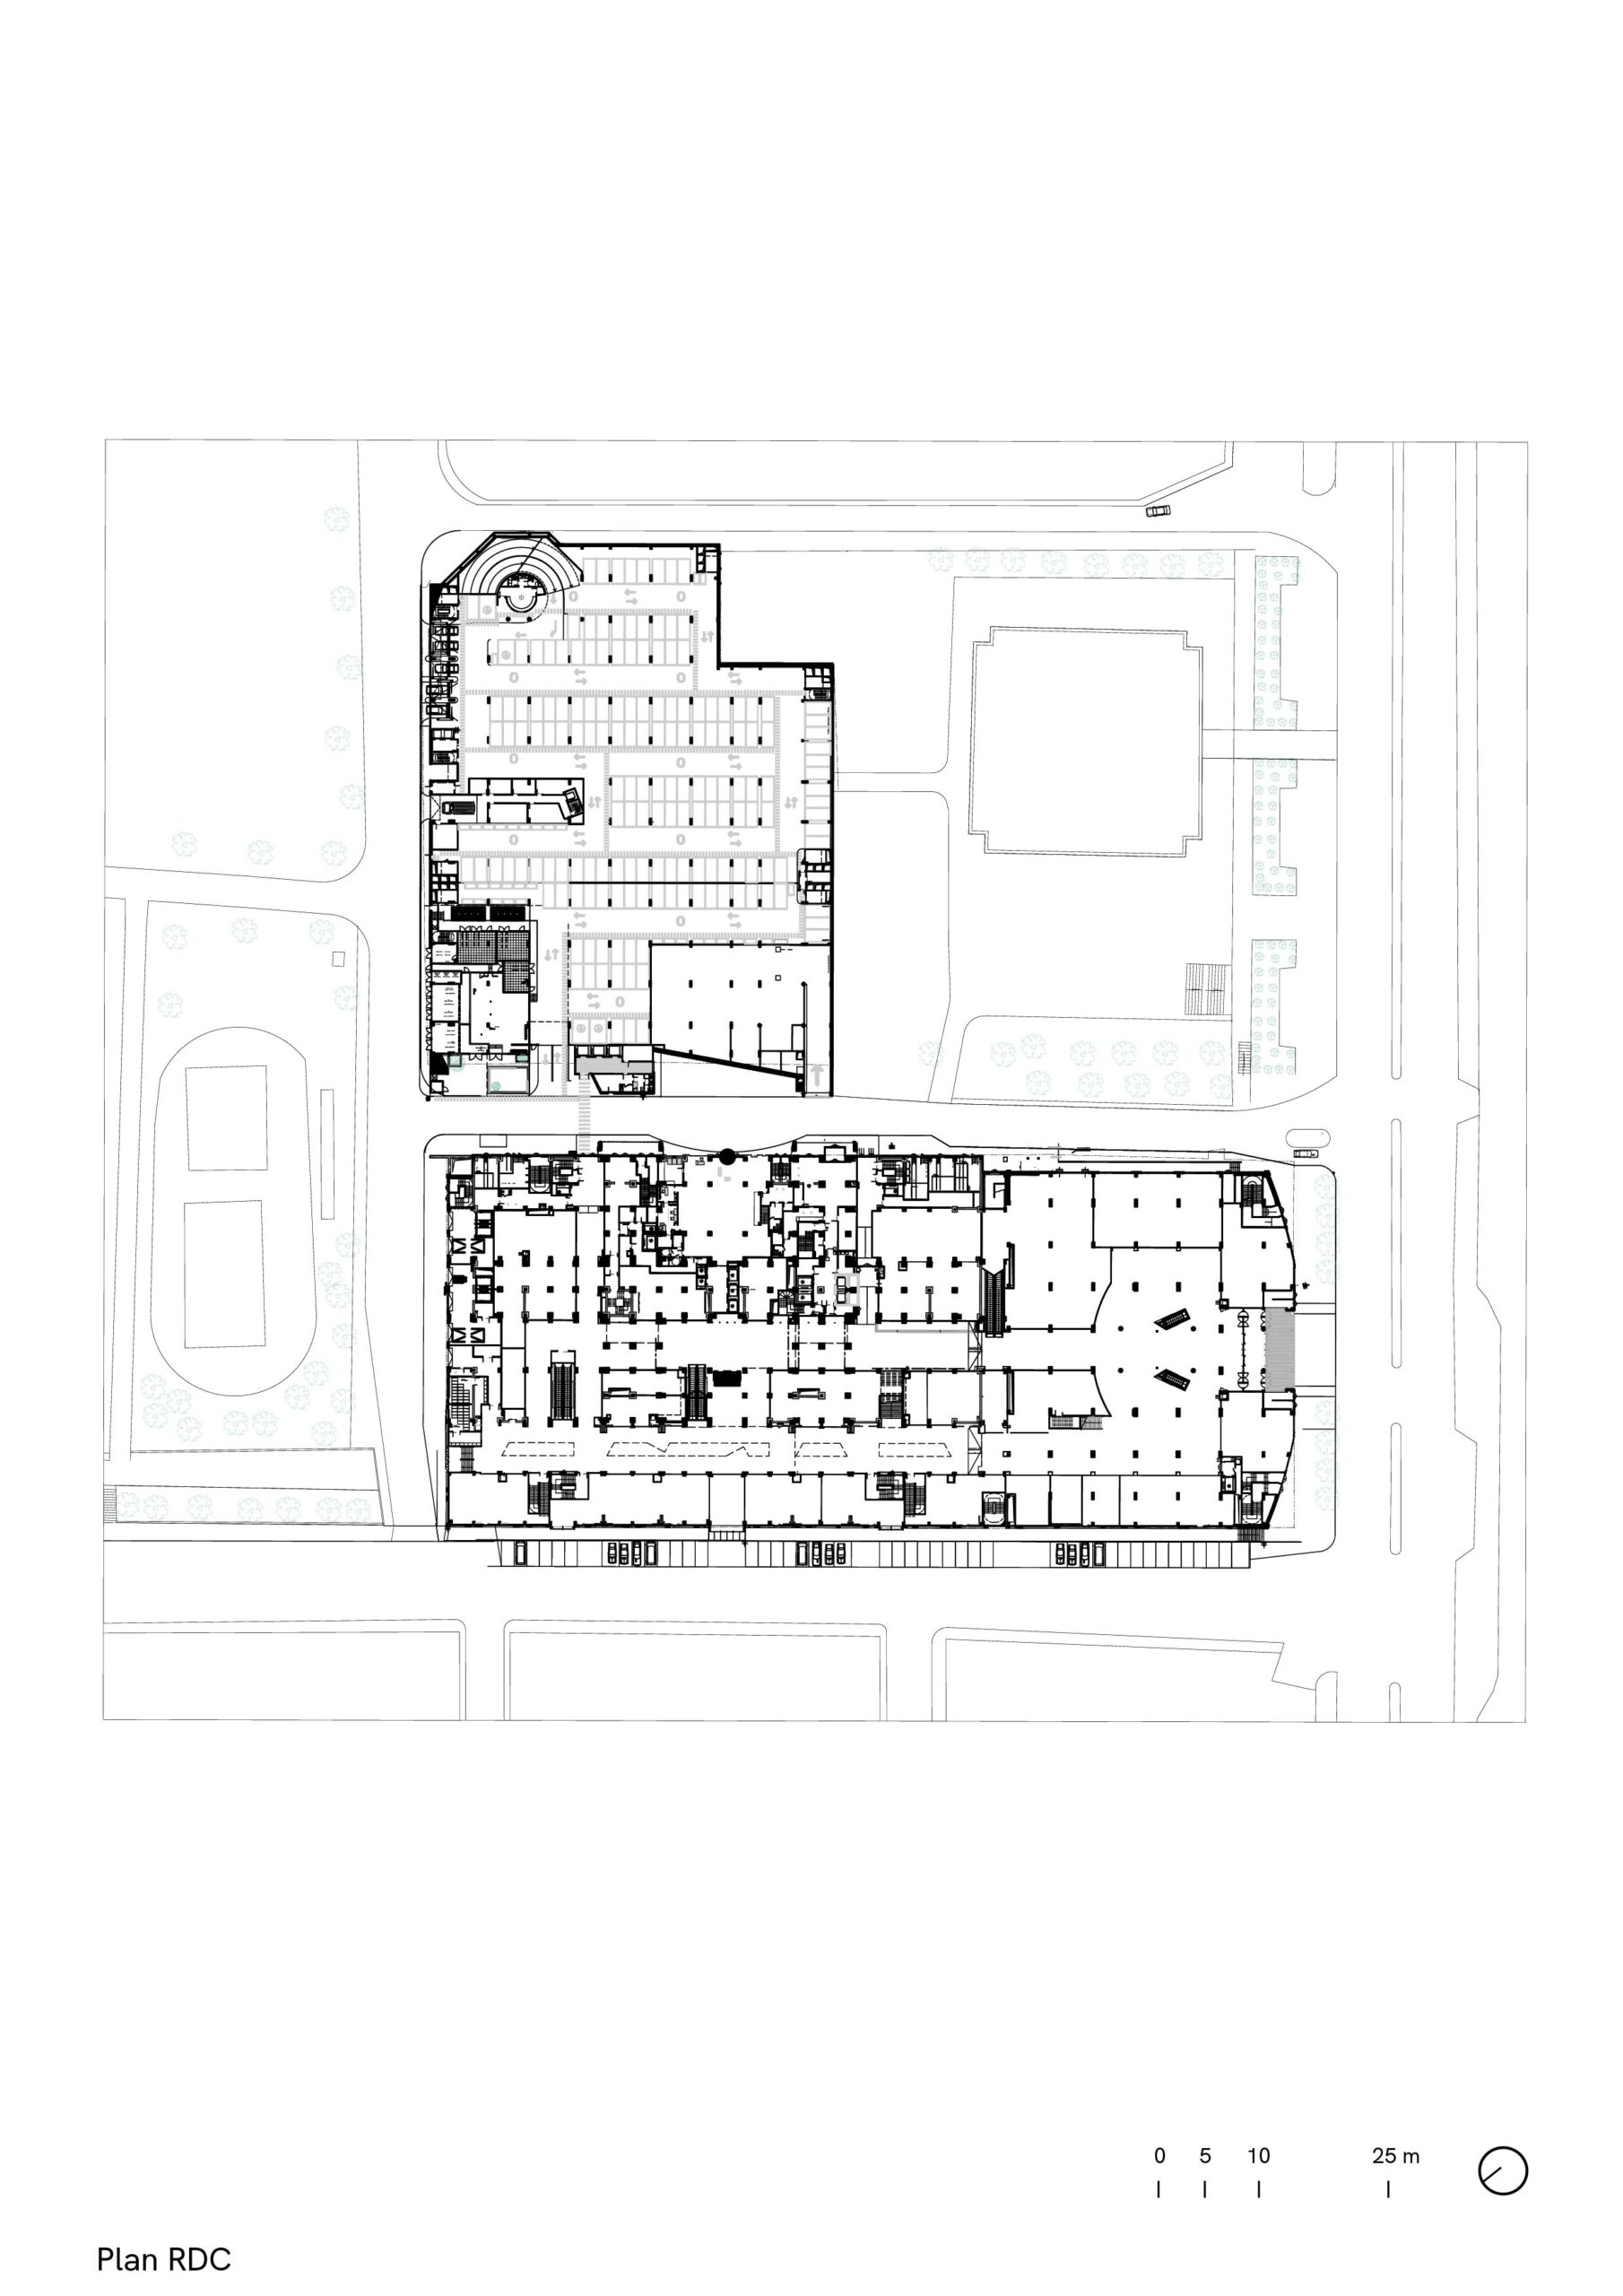 Complexe Park Mall, Setif, Algérie, plan RDC